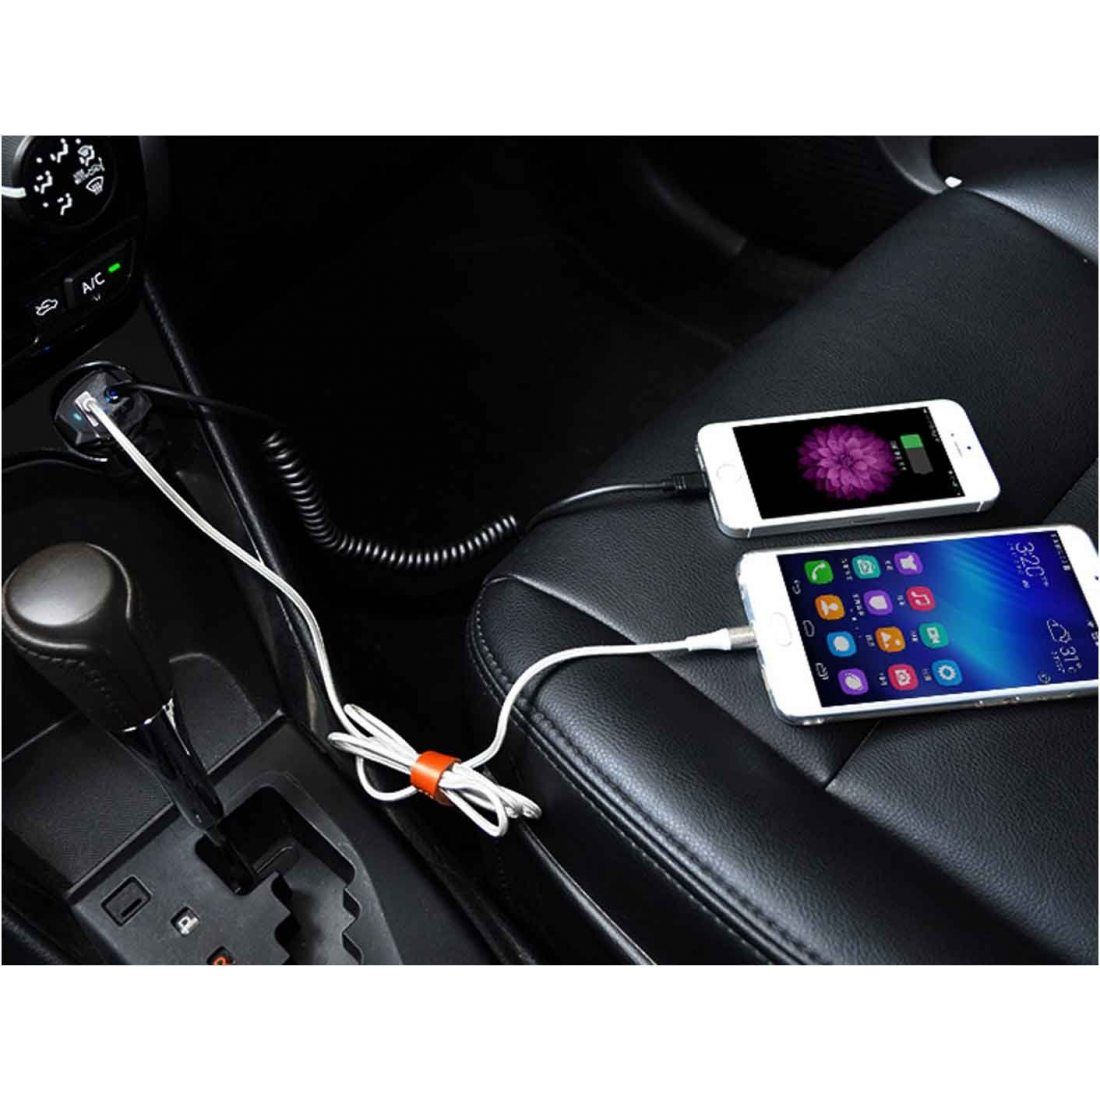 6S Plus et iPhone 7/7 Plus 6S Complètement compatible avec t Goliton Câble audio pour Hyundai Kia Interface de musique avec fonction de charge Chargeur Câble Aux Plug and Play Connectez-vous à Apple iPhone SE et iPhone 6 